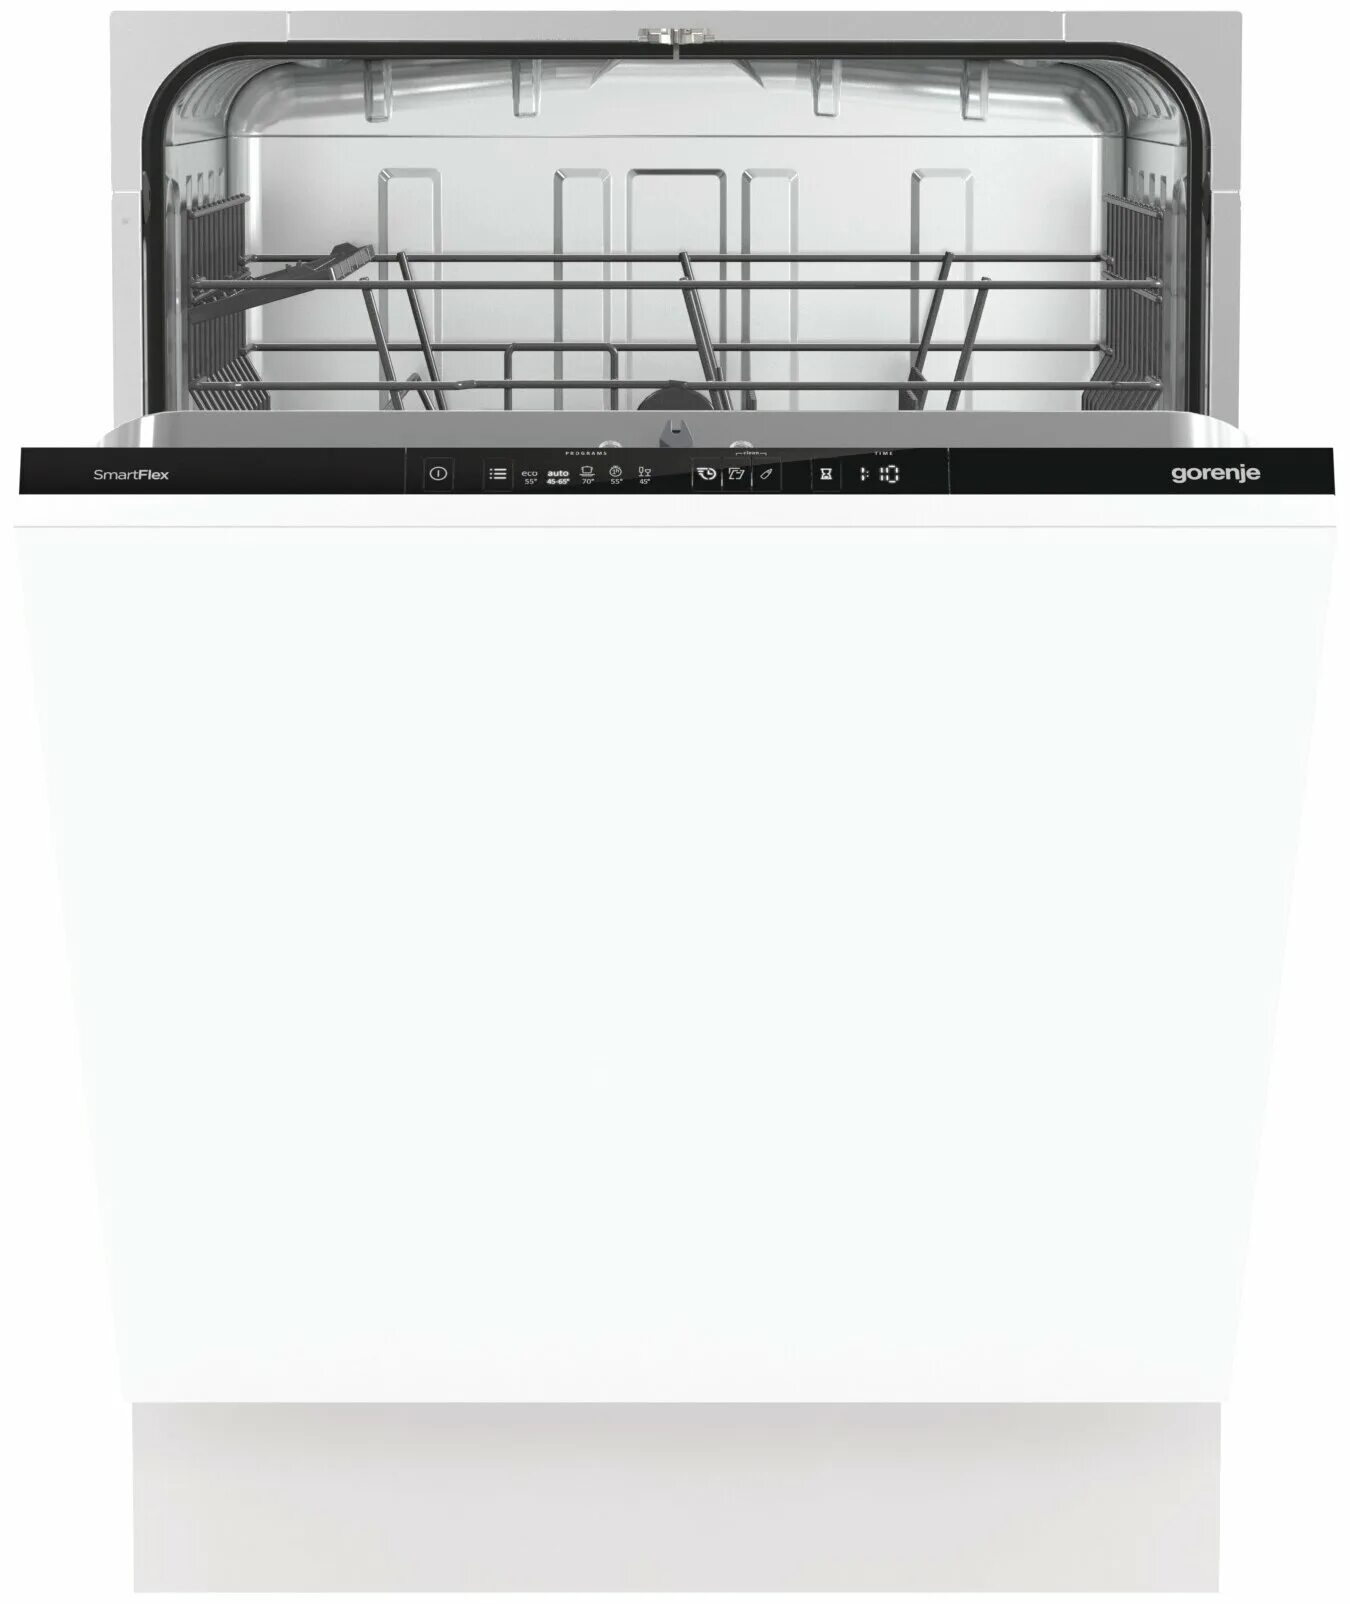 Пмм горенье. Посудомоечная машина Gorenje gv672c62. Встраиваемая посудомоечная машина 60 см Gorenje gv661d60. Машина посудомоечная Gorenje GV 661d60. Gorenje gv620e10.